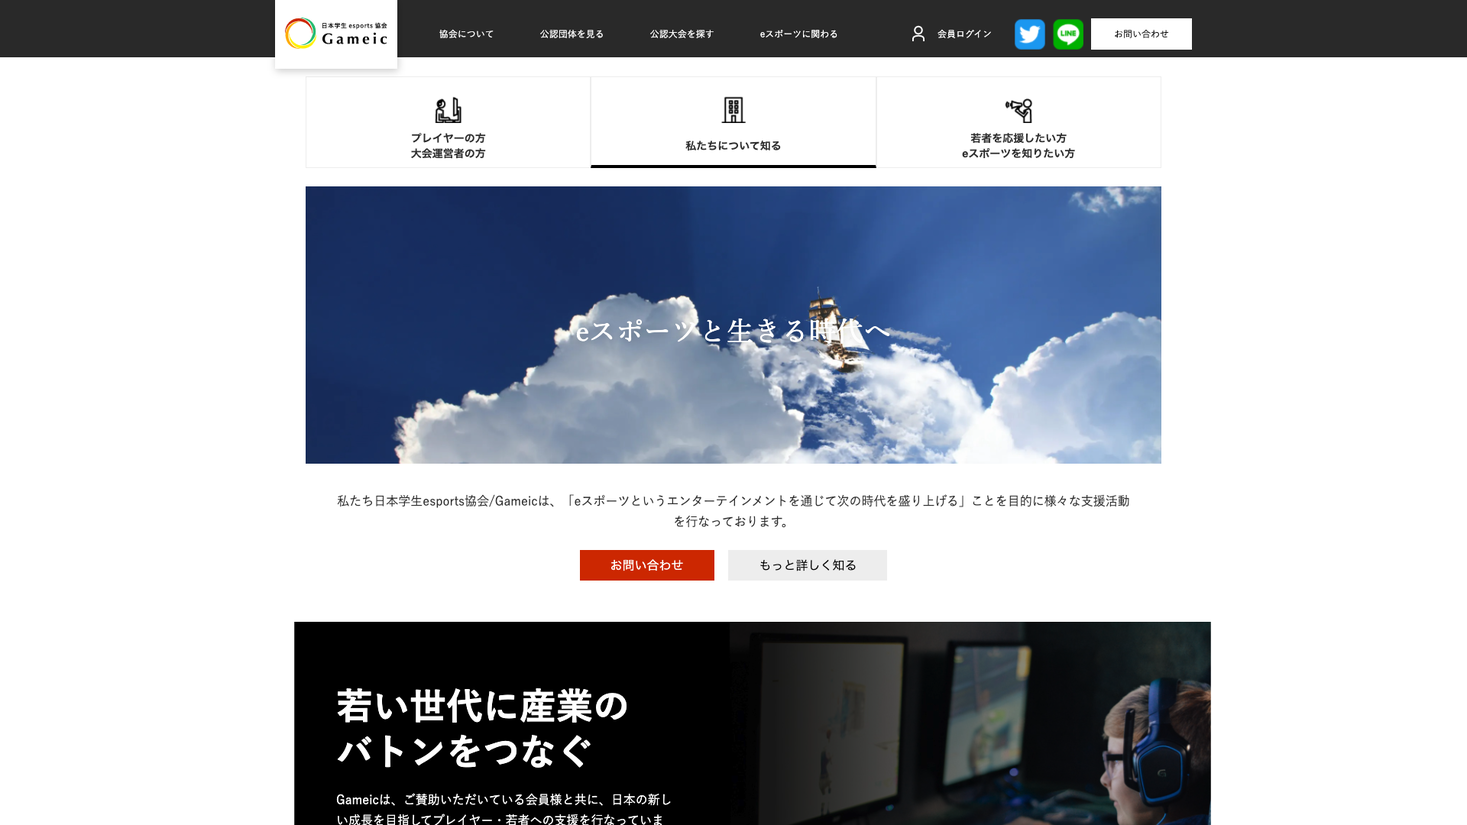 「eスポーツと生きる時代へ」日本学生esports協会 / Gameic、公式サイトを全面リニューアル